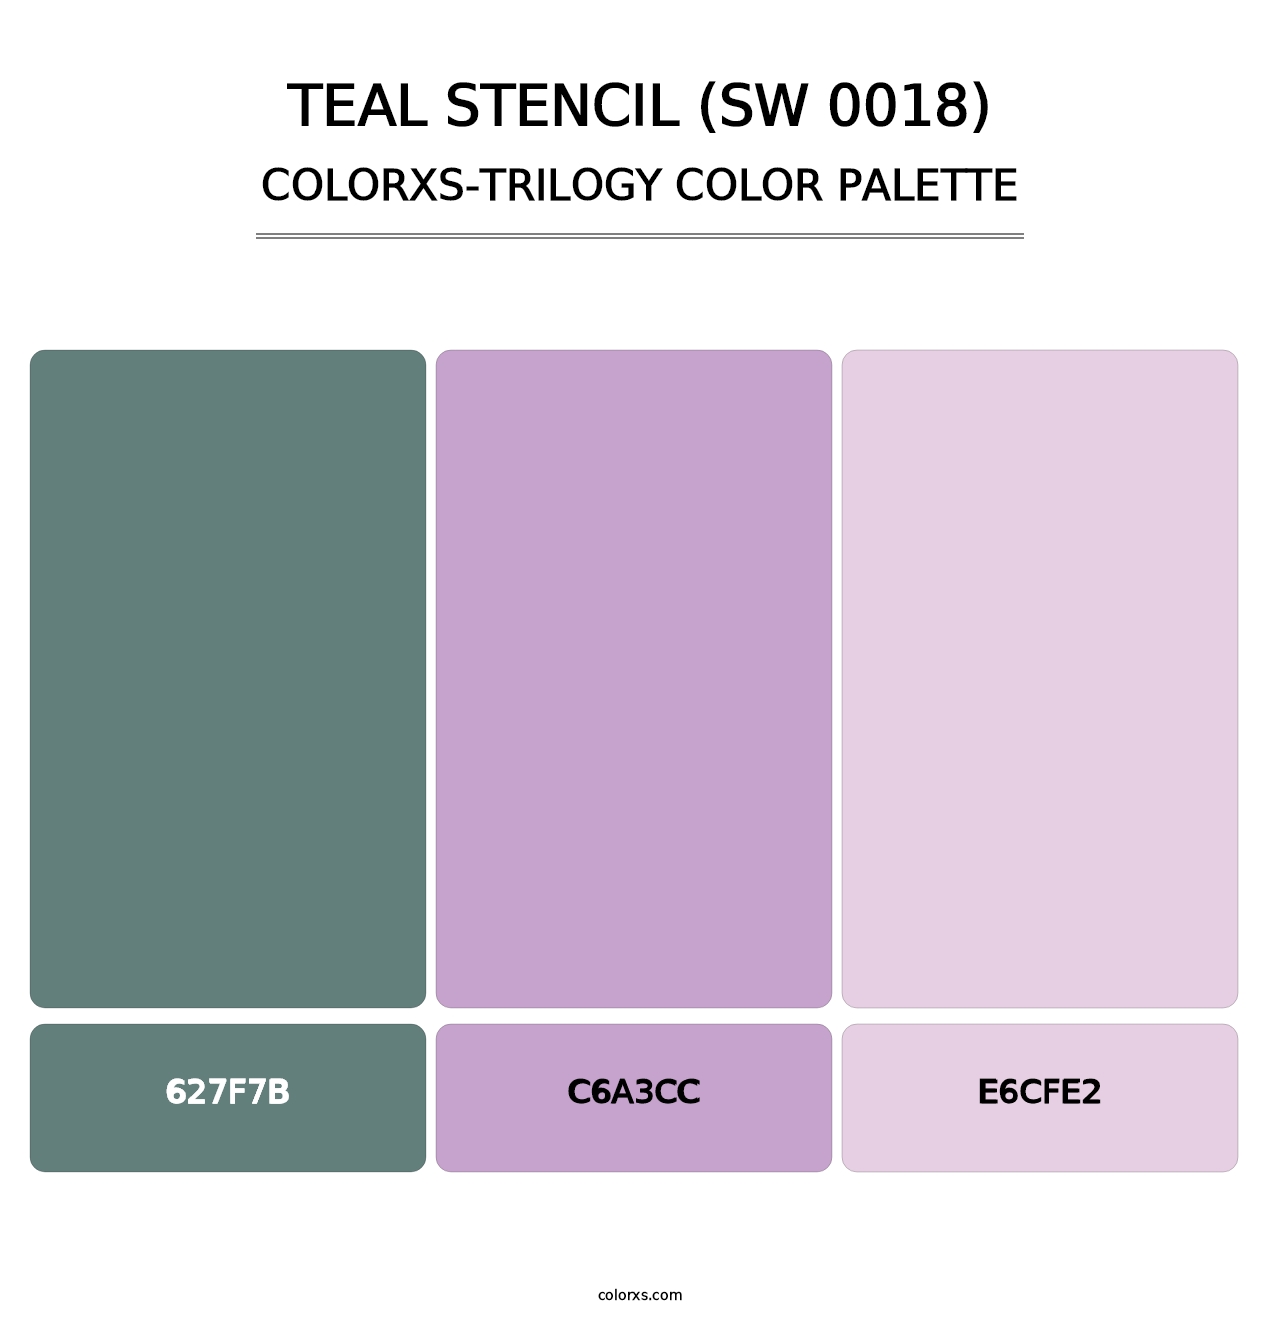 Teal Stencil (SW 0018) - Colorxs Trilogy Palette